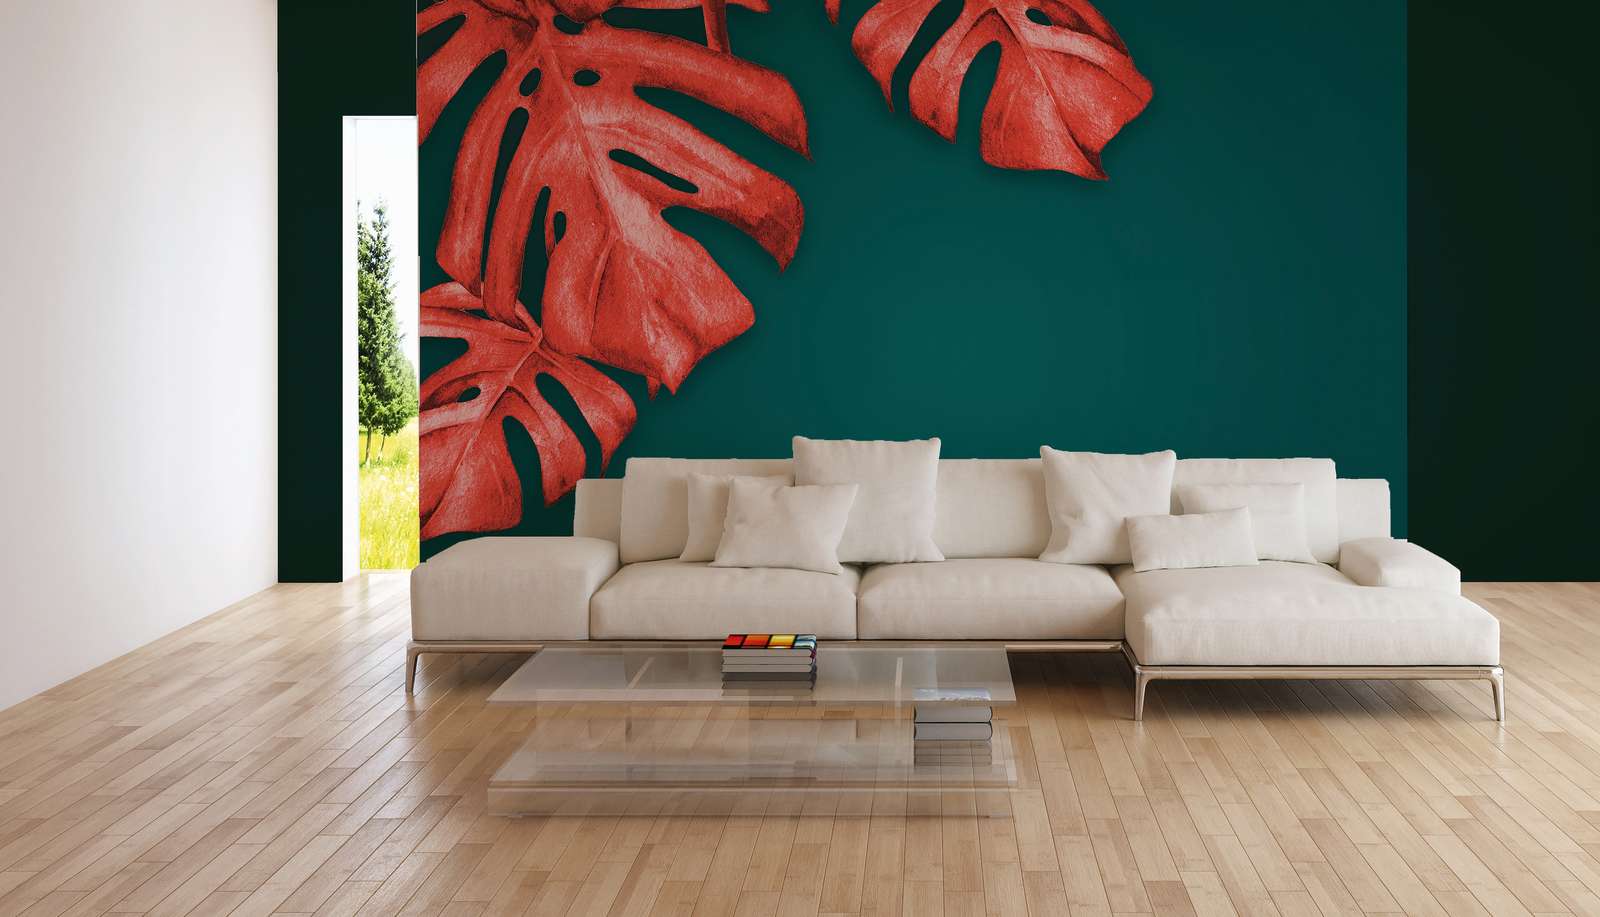             Digital behang met getekende palmboom - rood, turkoois
        